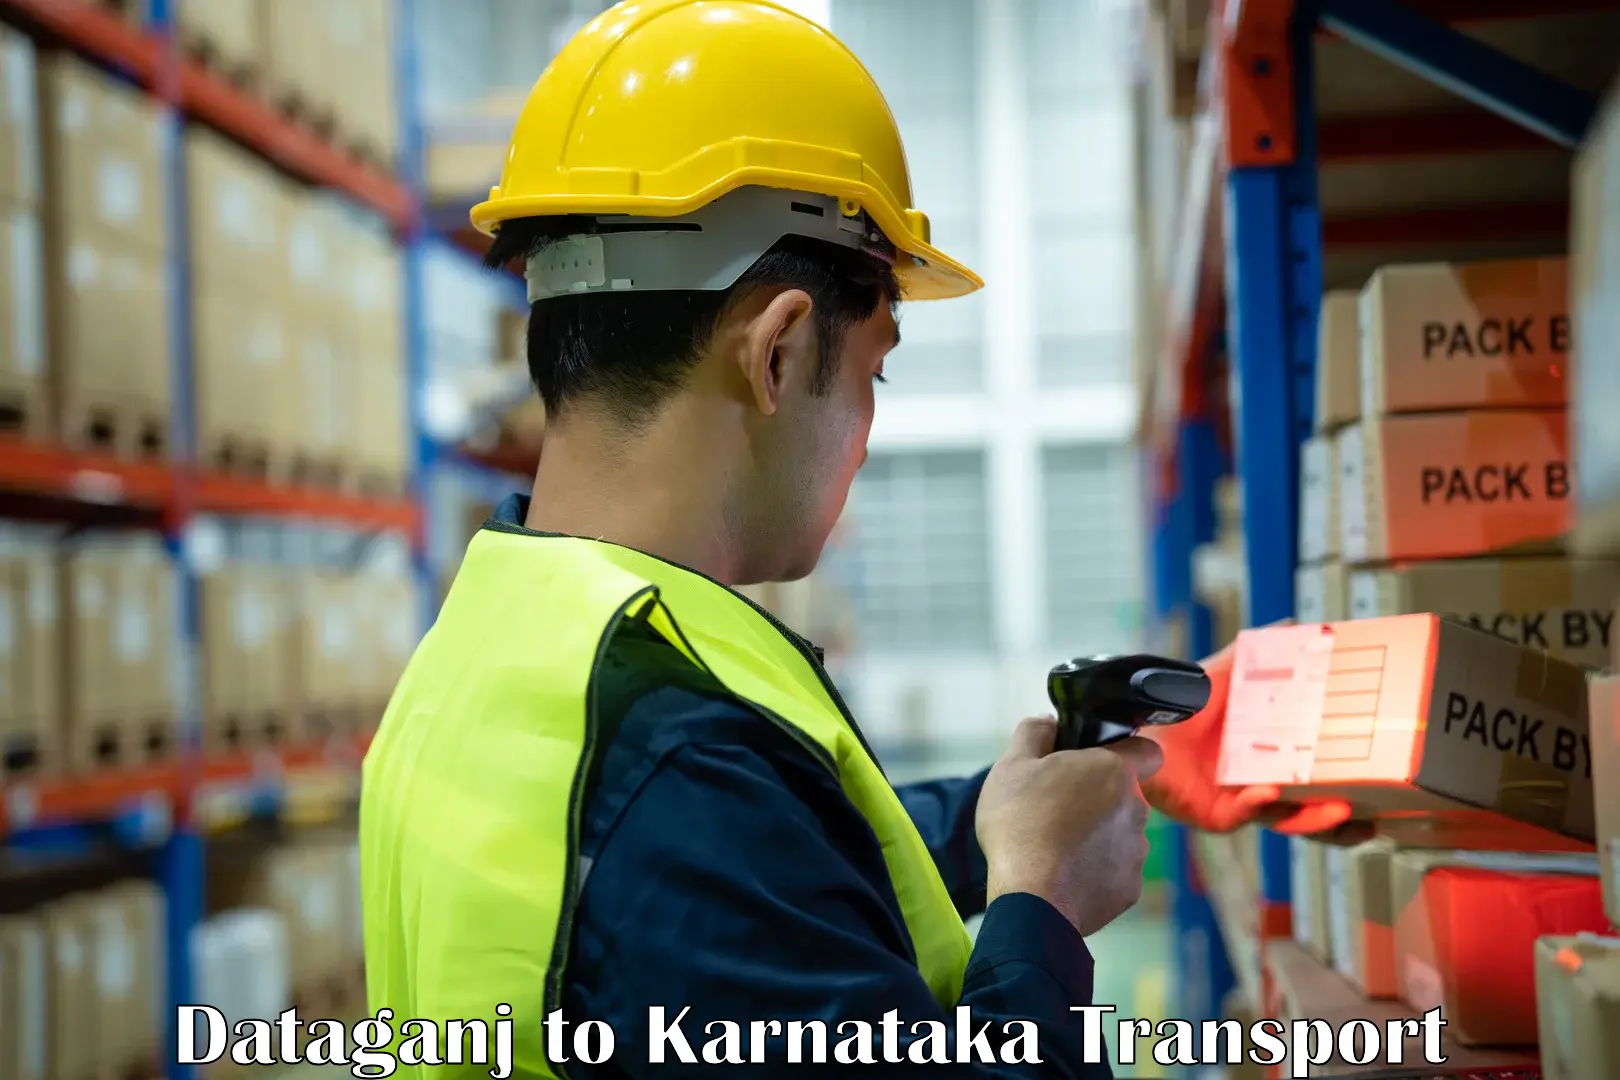 Furniture transport service Dataganj to Karnataka